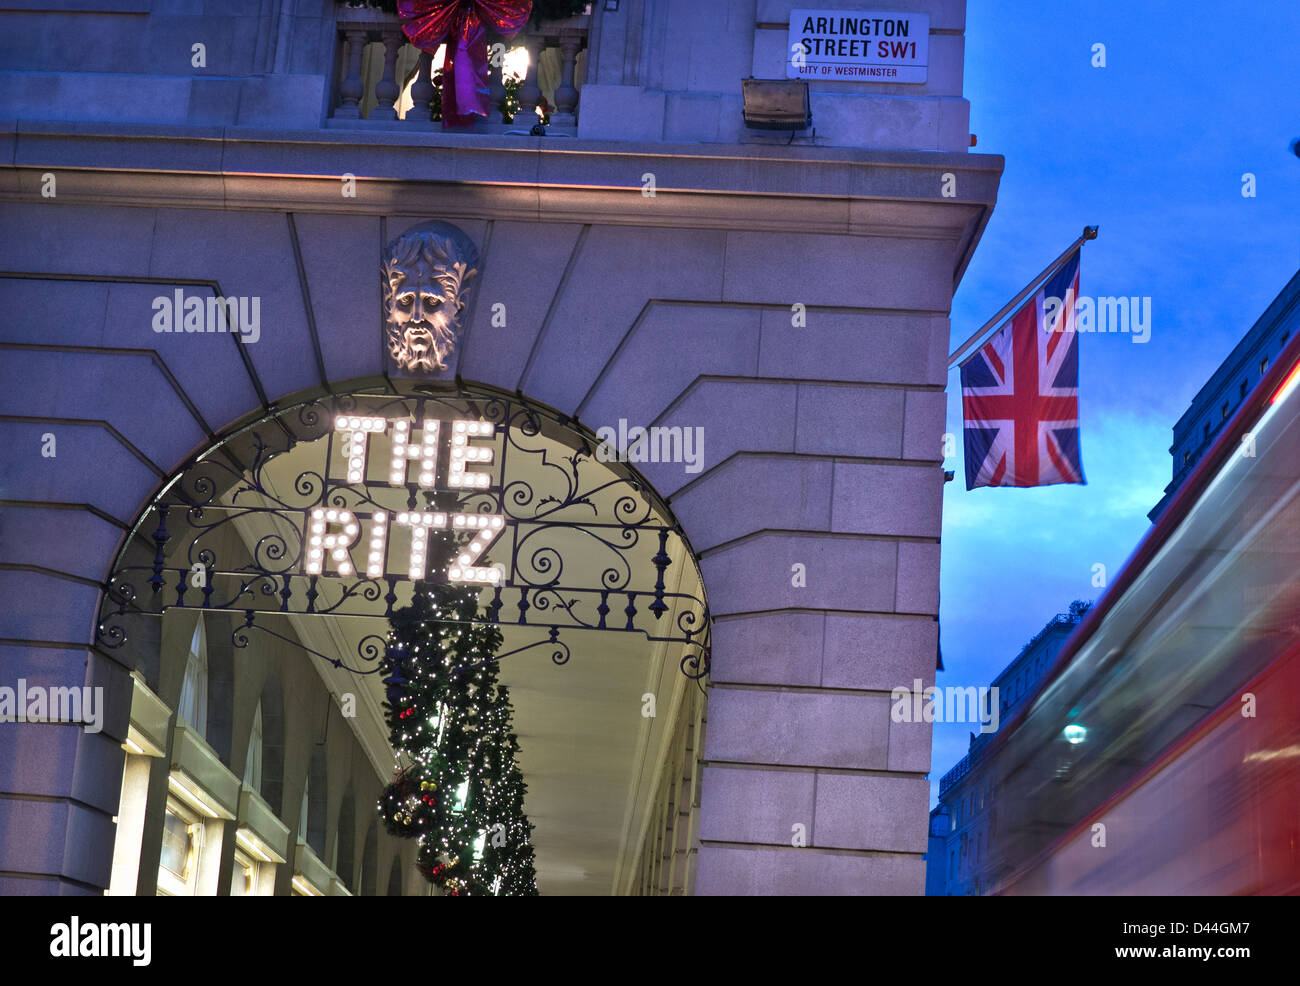 Das Ritz Hotel London bei Dämmerung Außenleuchten name mit Weihnachtsschmuck Union Jack Flagge und verschwommenes vorbei an roten Bus Piccadilly London UK Stockfoto